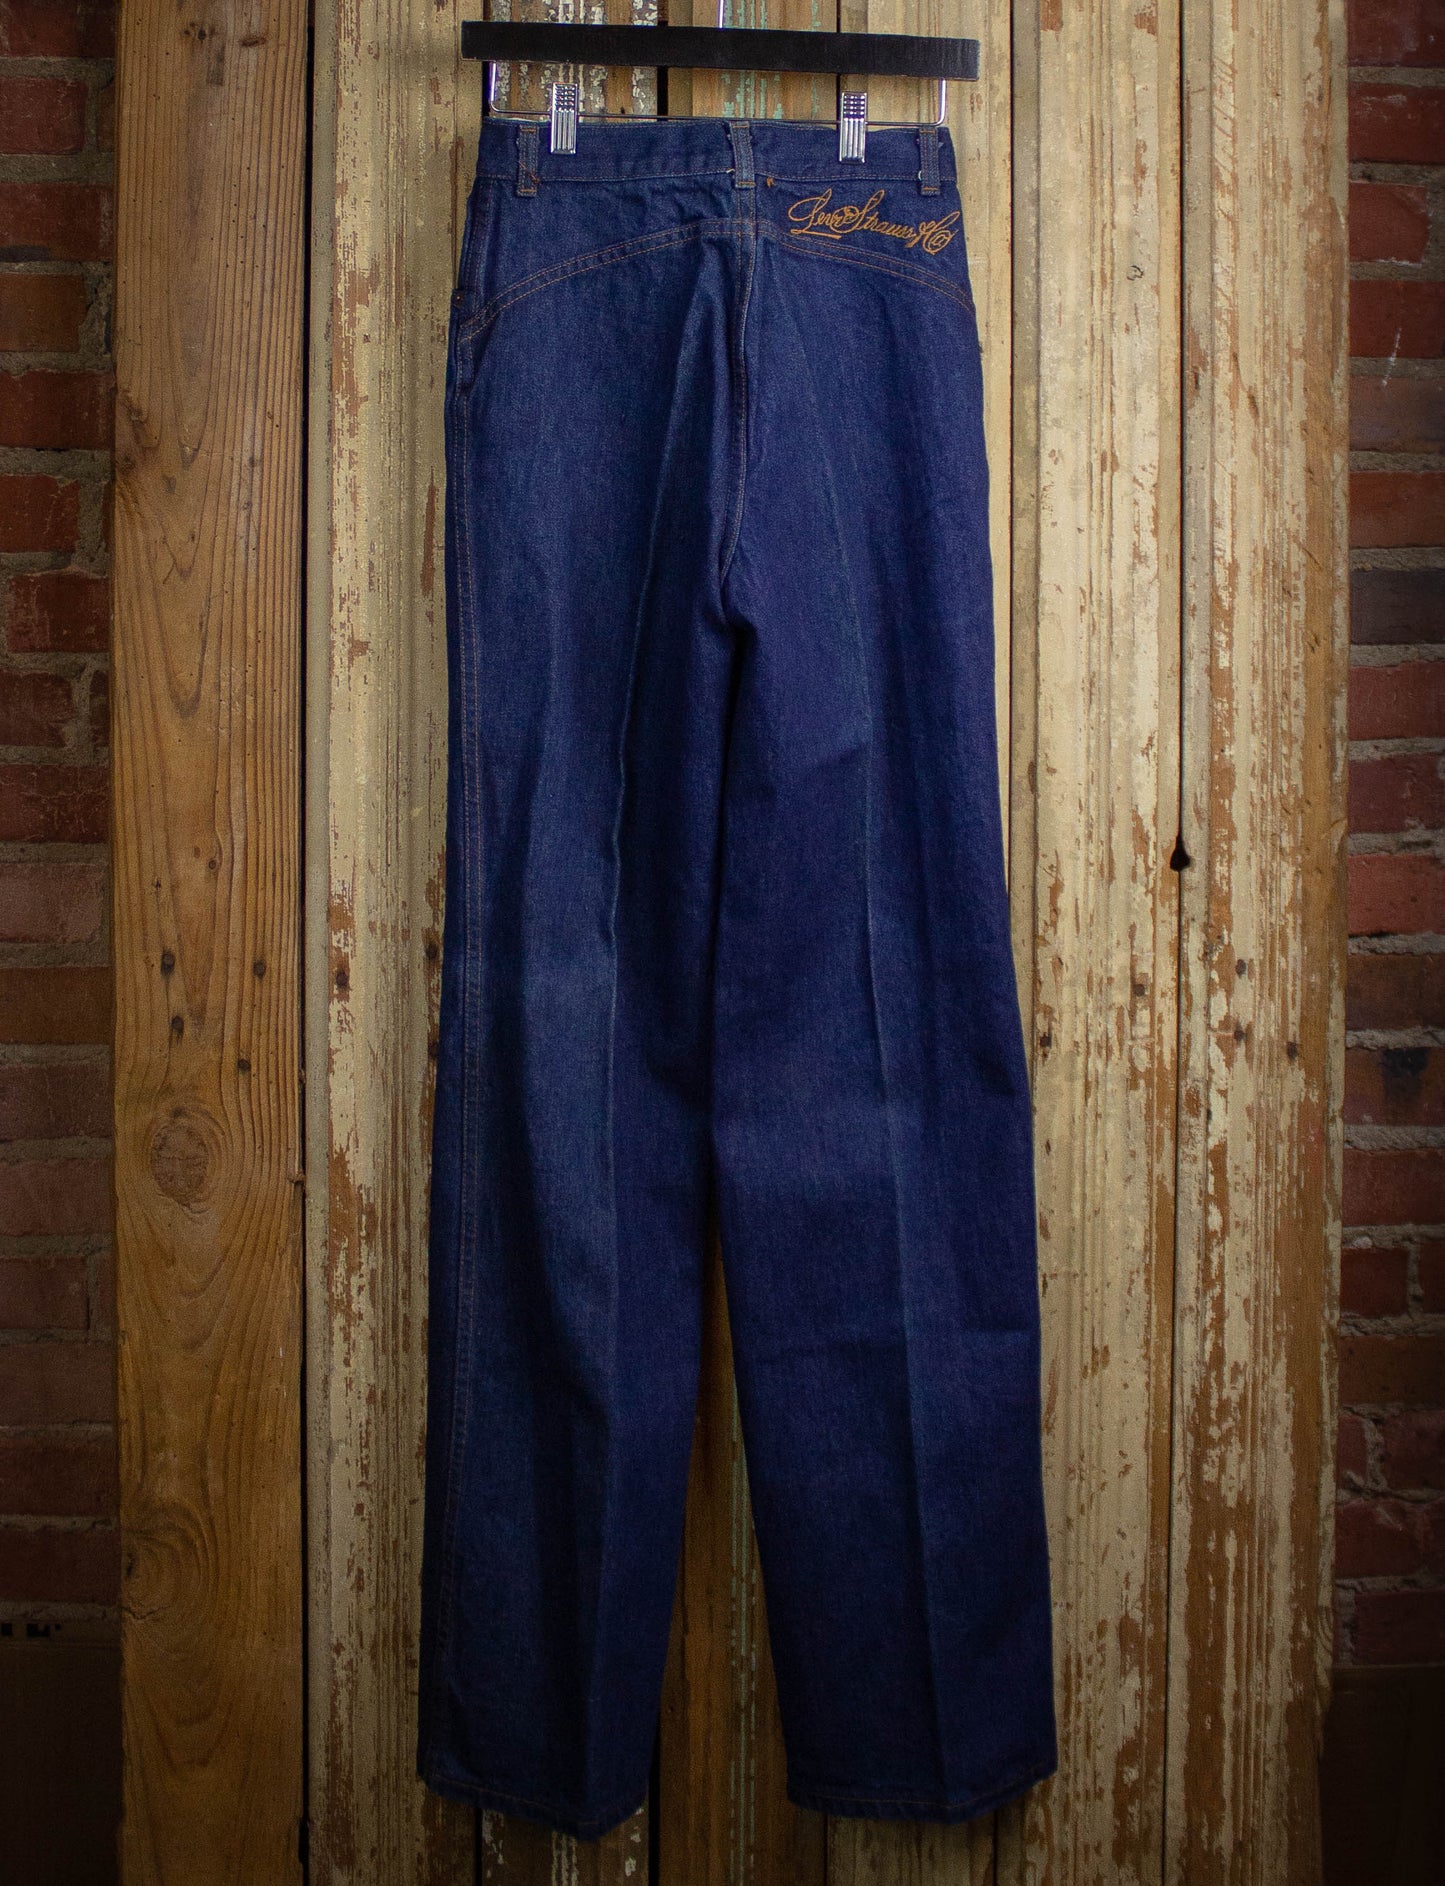 Vintage Levi's Deadstock Orange Tab Saddleback Denim Jeans 1977 Dark Wash 24x33